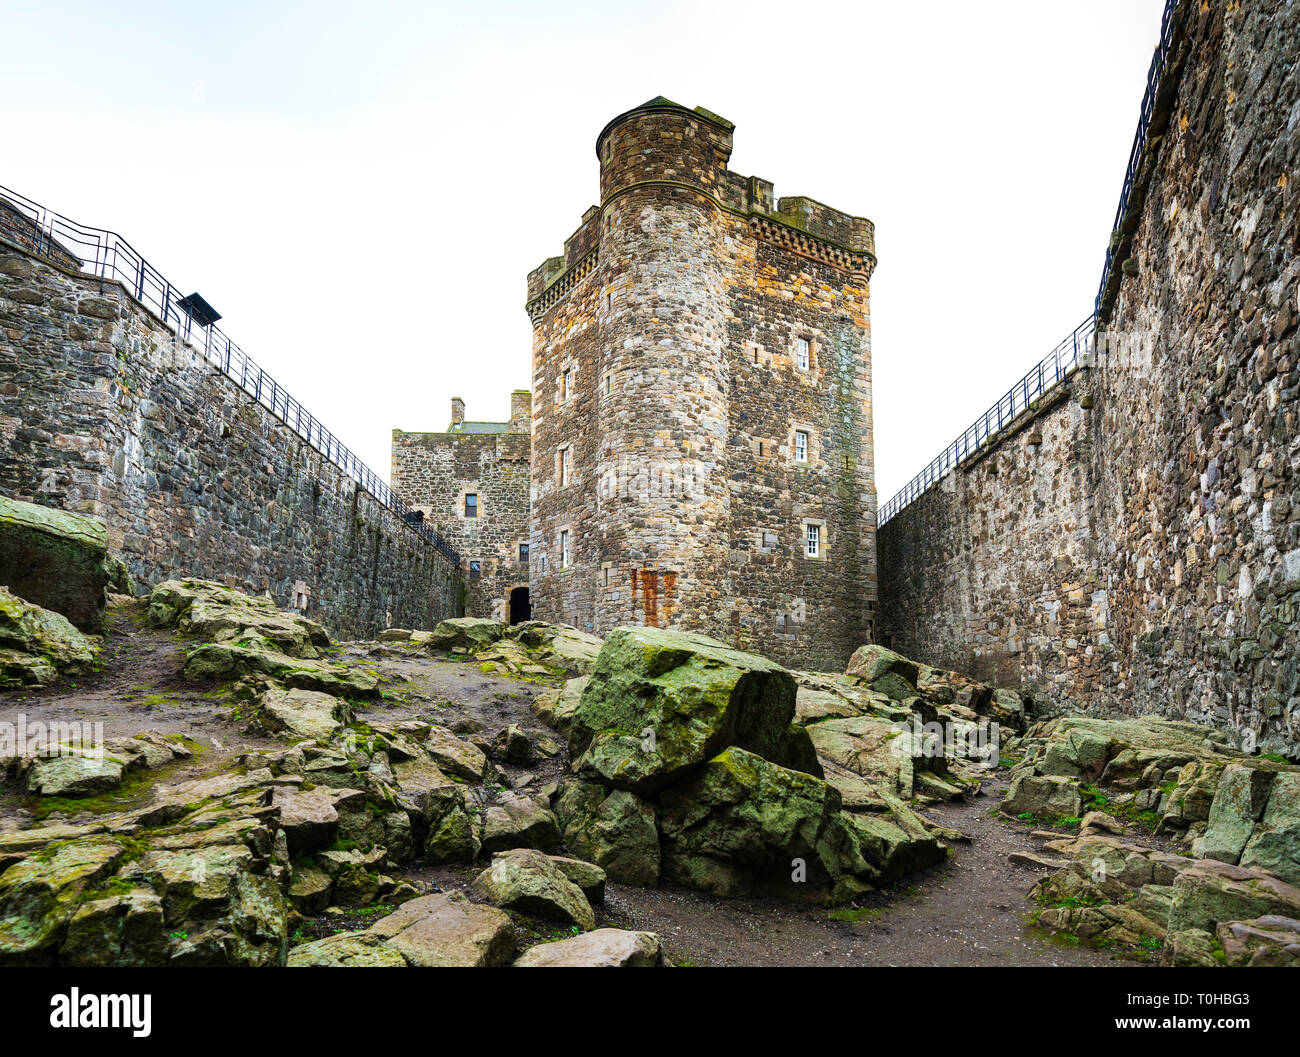 Schwärze Burg eine Festung aus dem 15. Jahrhundert, in der Nähe des Dorfes Schwärze, Schottland, am Südufer des Firth-of-Forth, Schottland, Großbritannien. Schwärzungsgrad Stockfoto